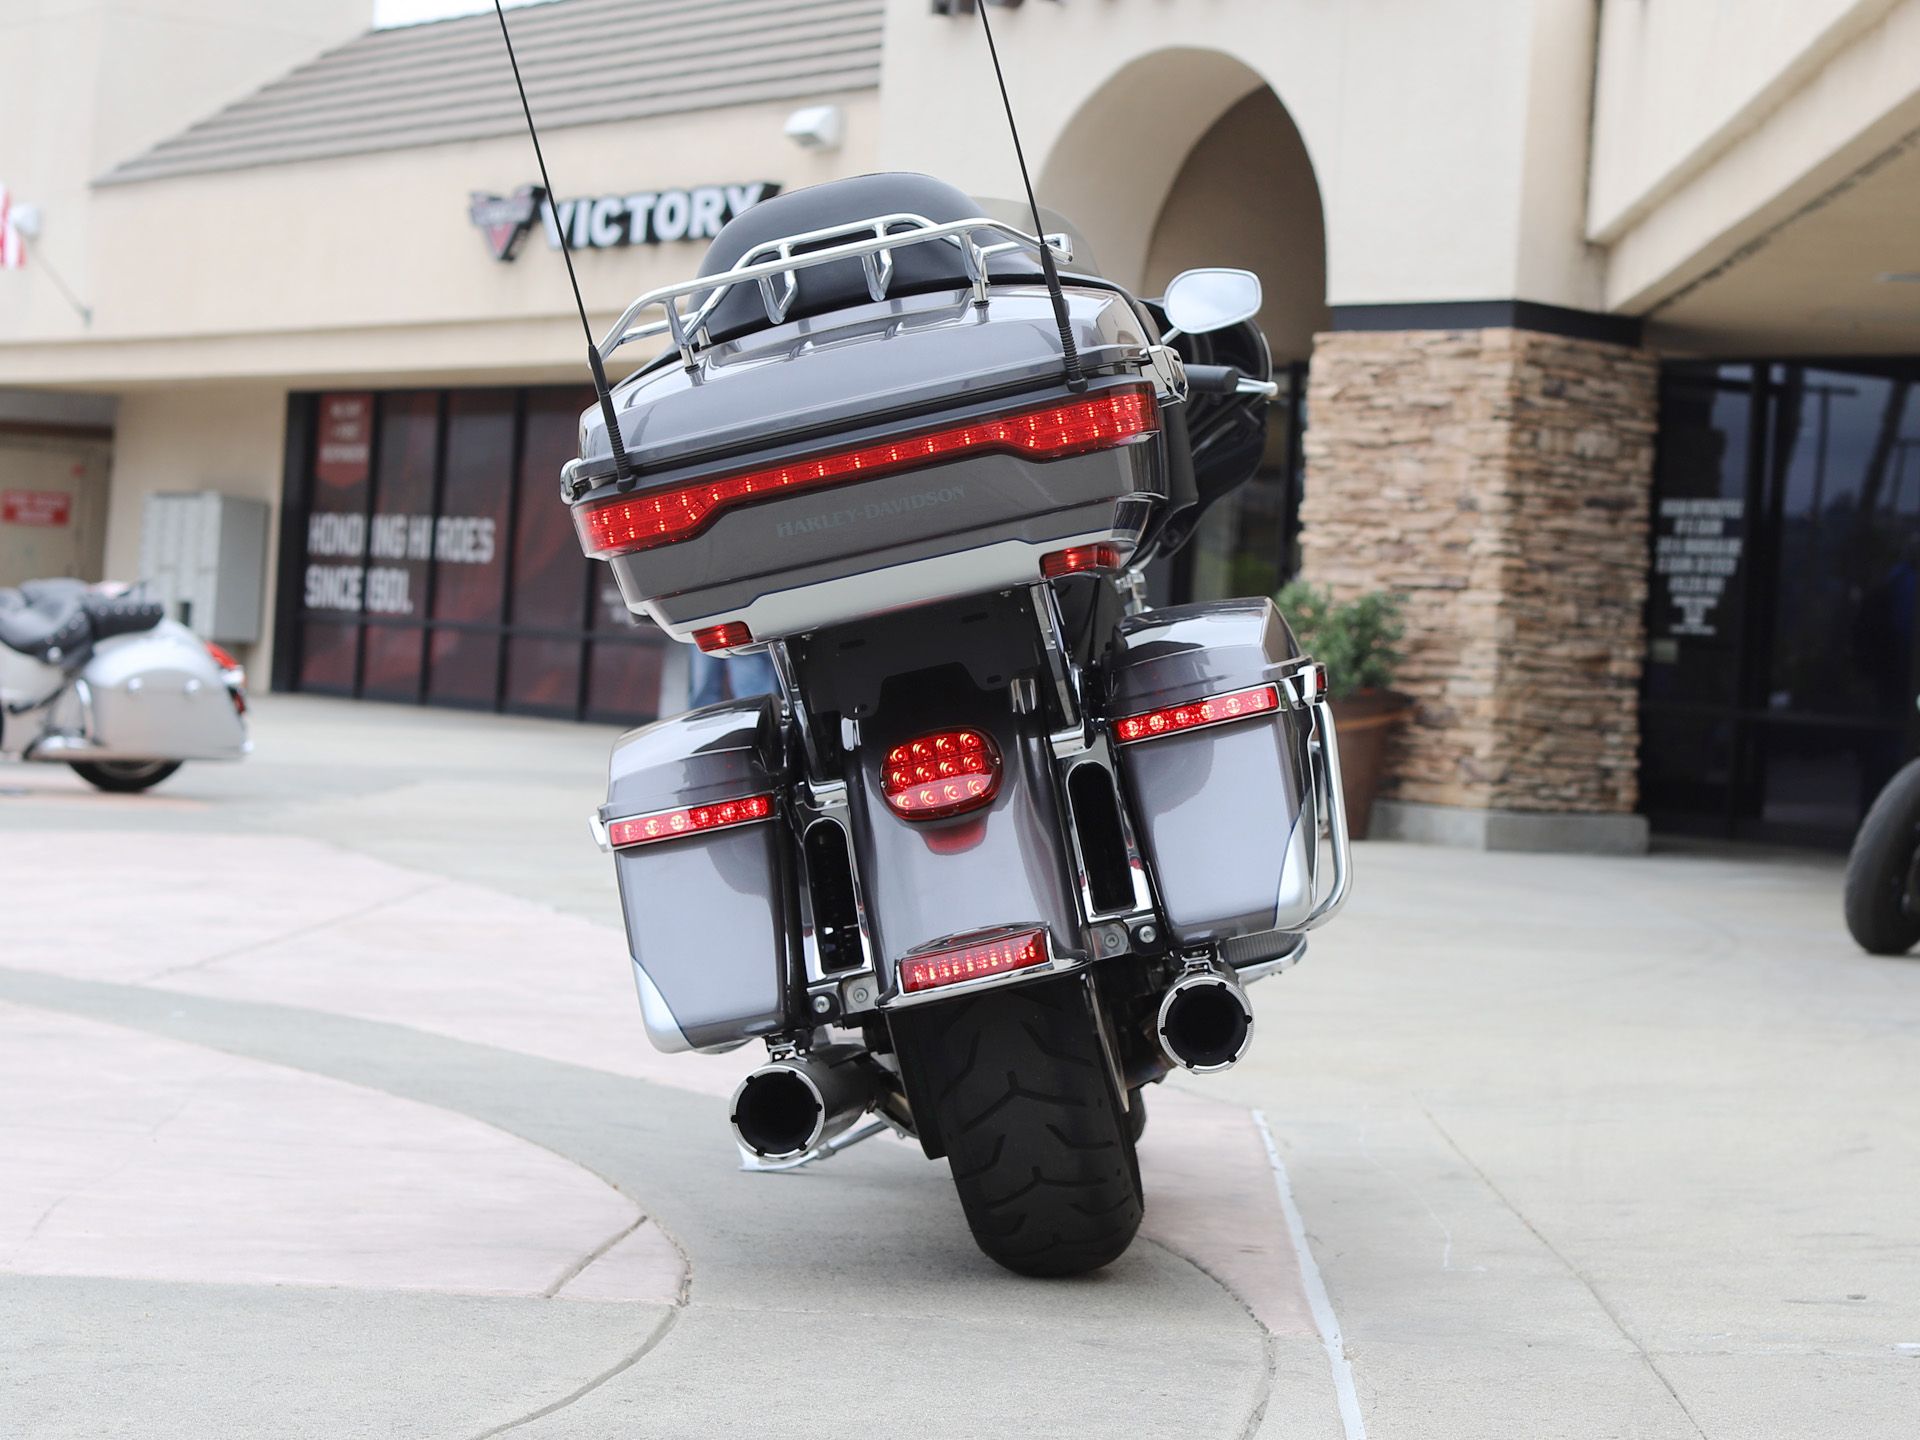 2014 Harley-Davidson Ultra Limited in EL Cajon, California - Photo 7